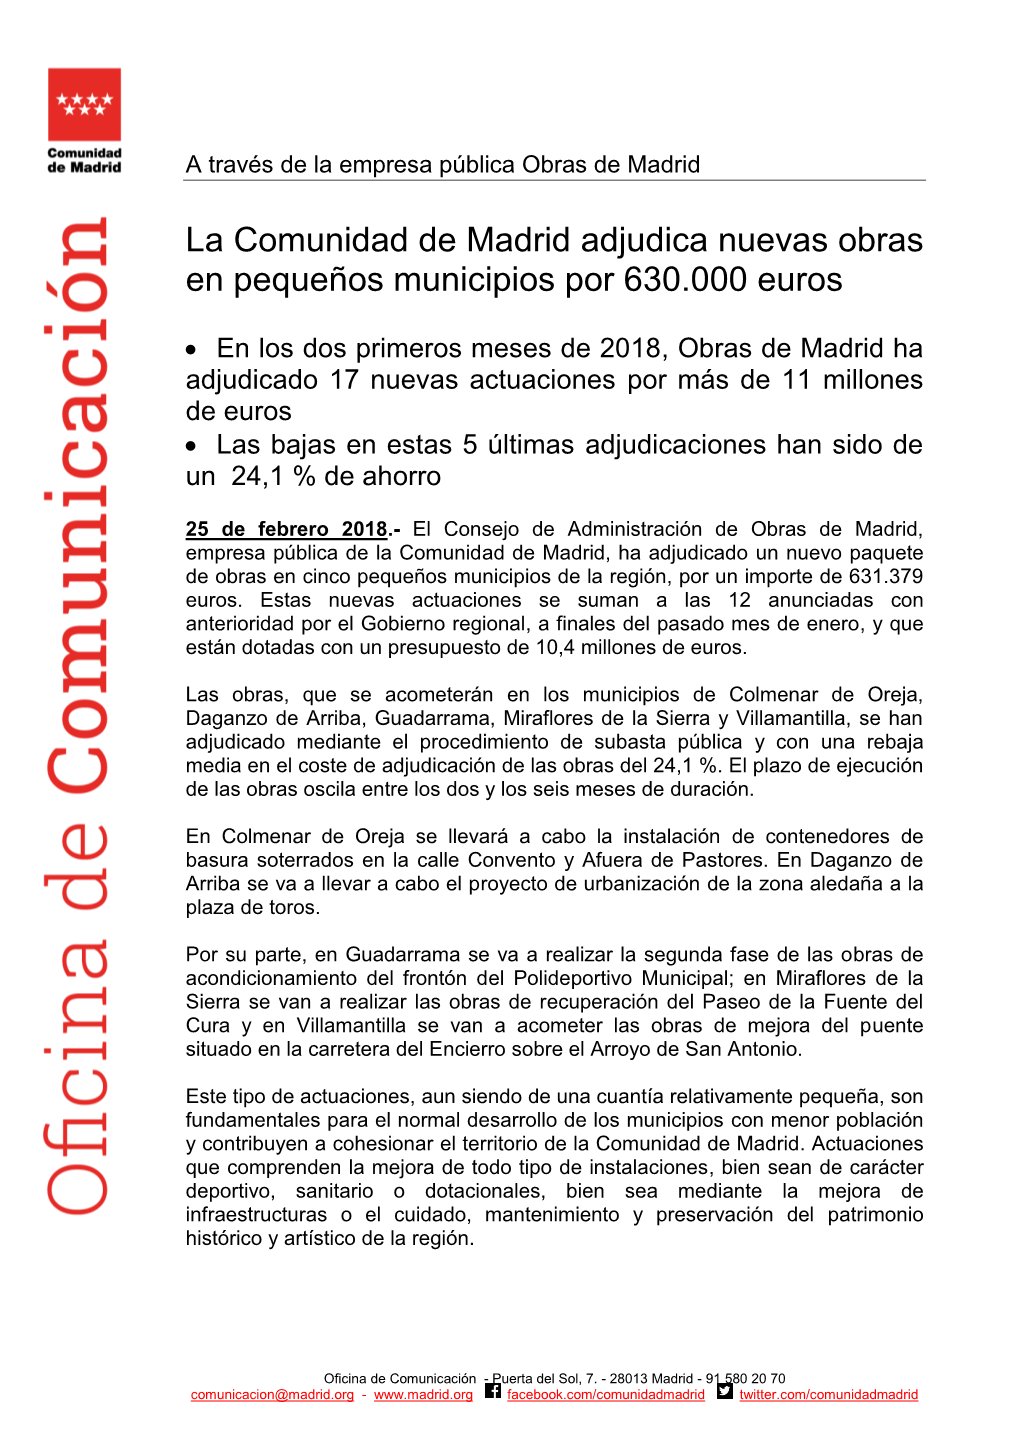 La Comunidad De Madrid Adjudica Nuevas Obras En Pequeños Municipios Por 630.000 Euros